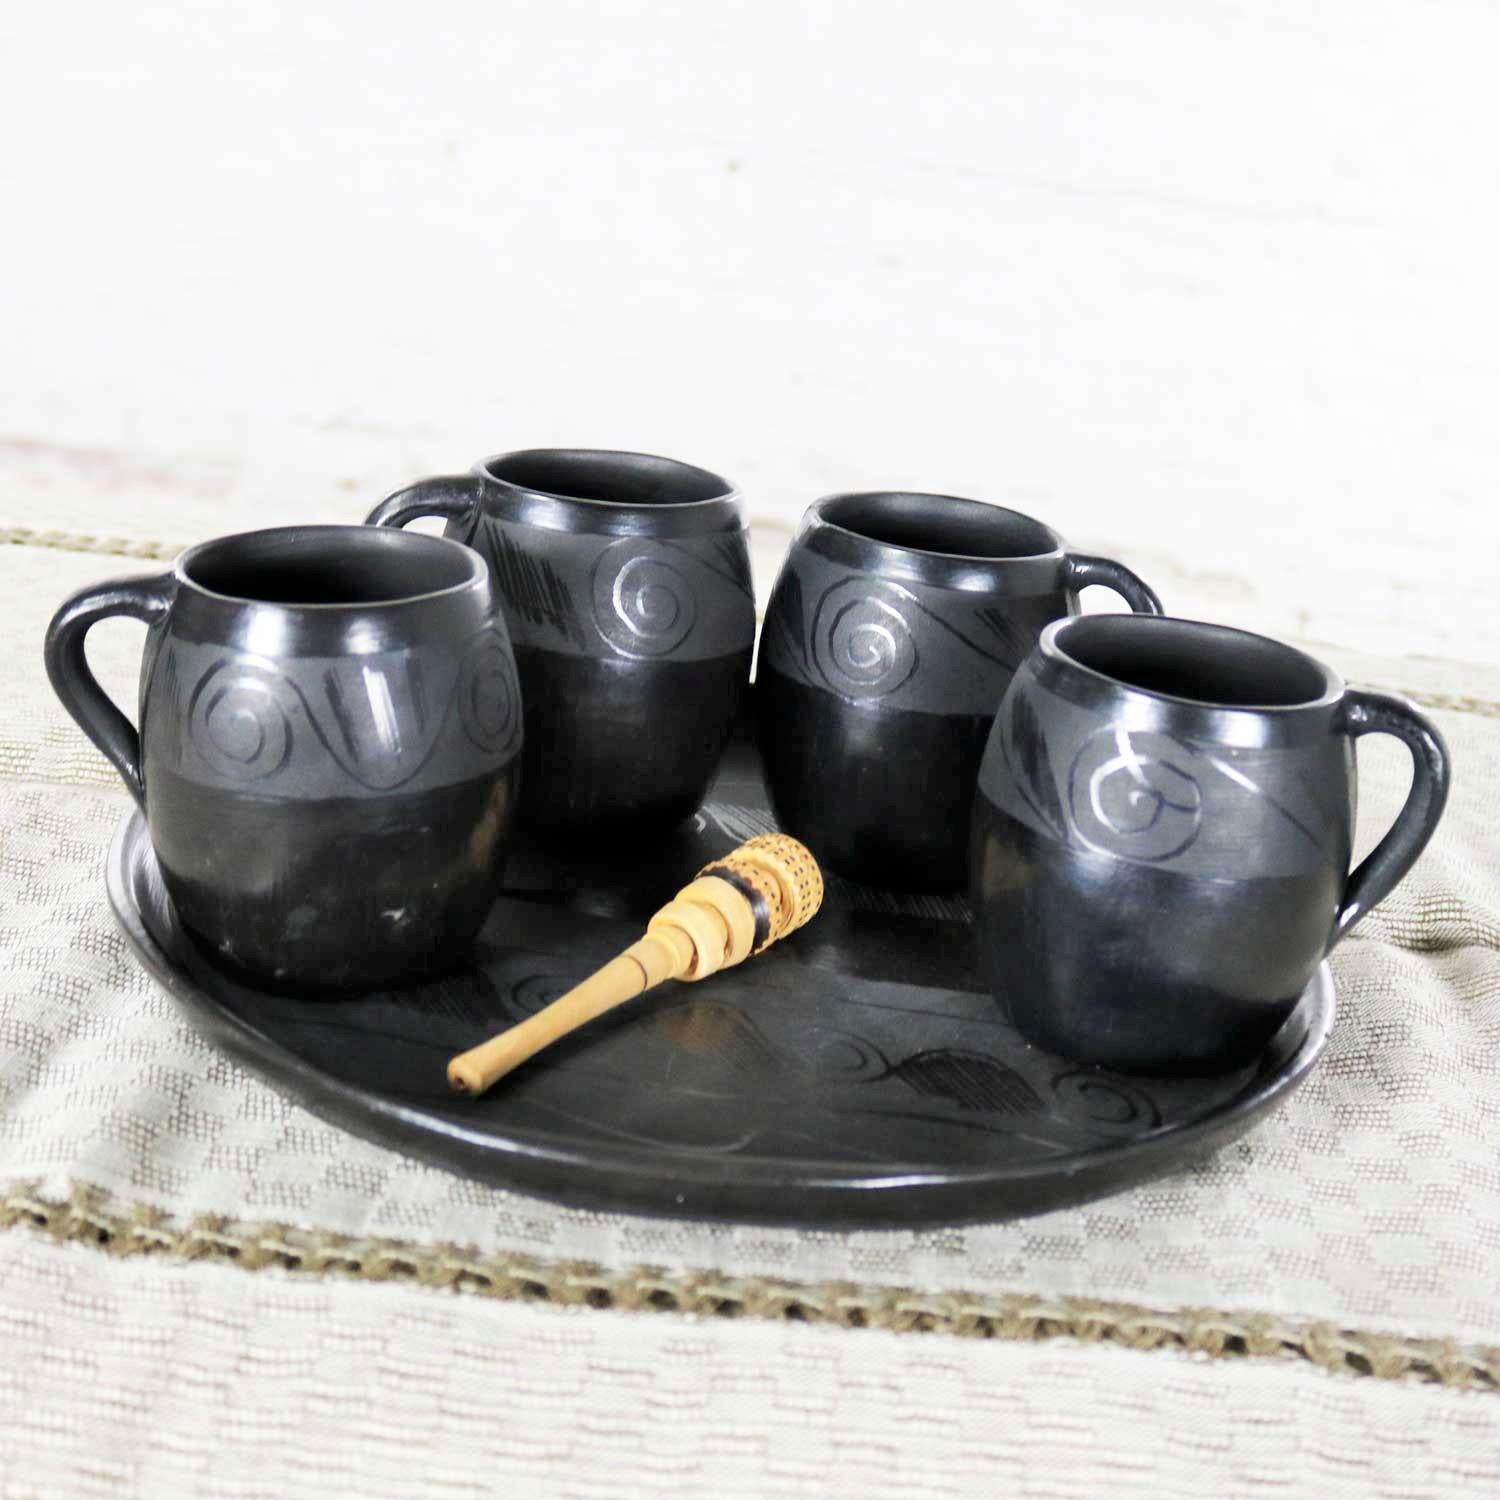 oaxaca black pottery for sale